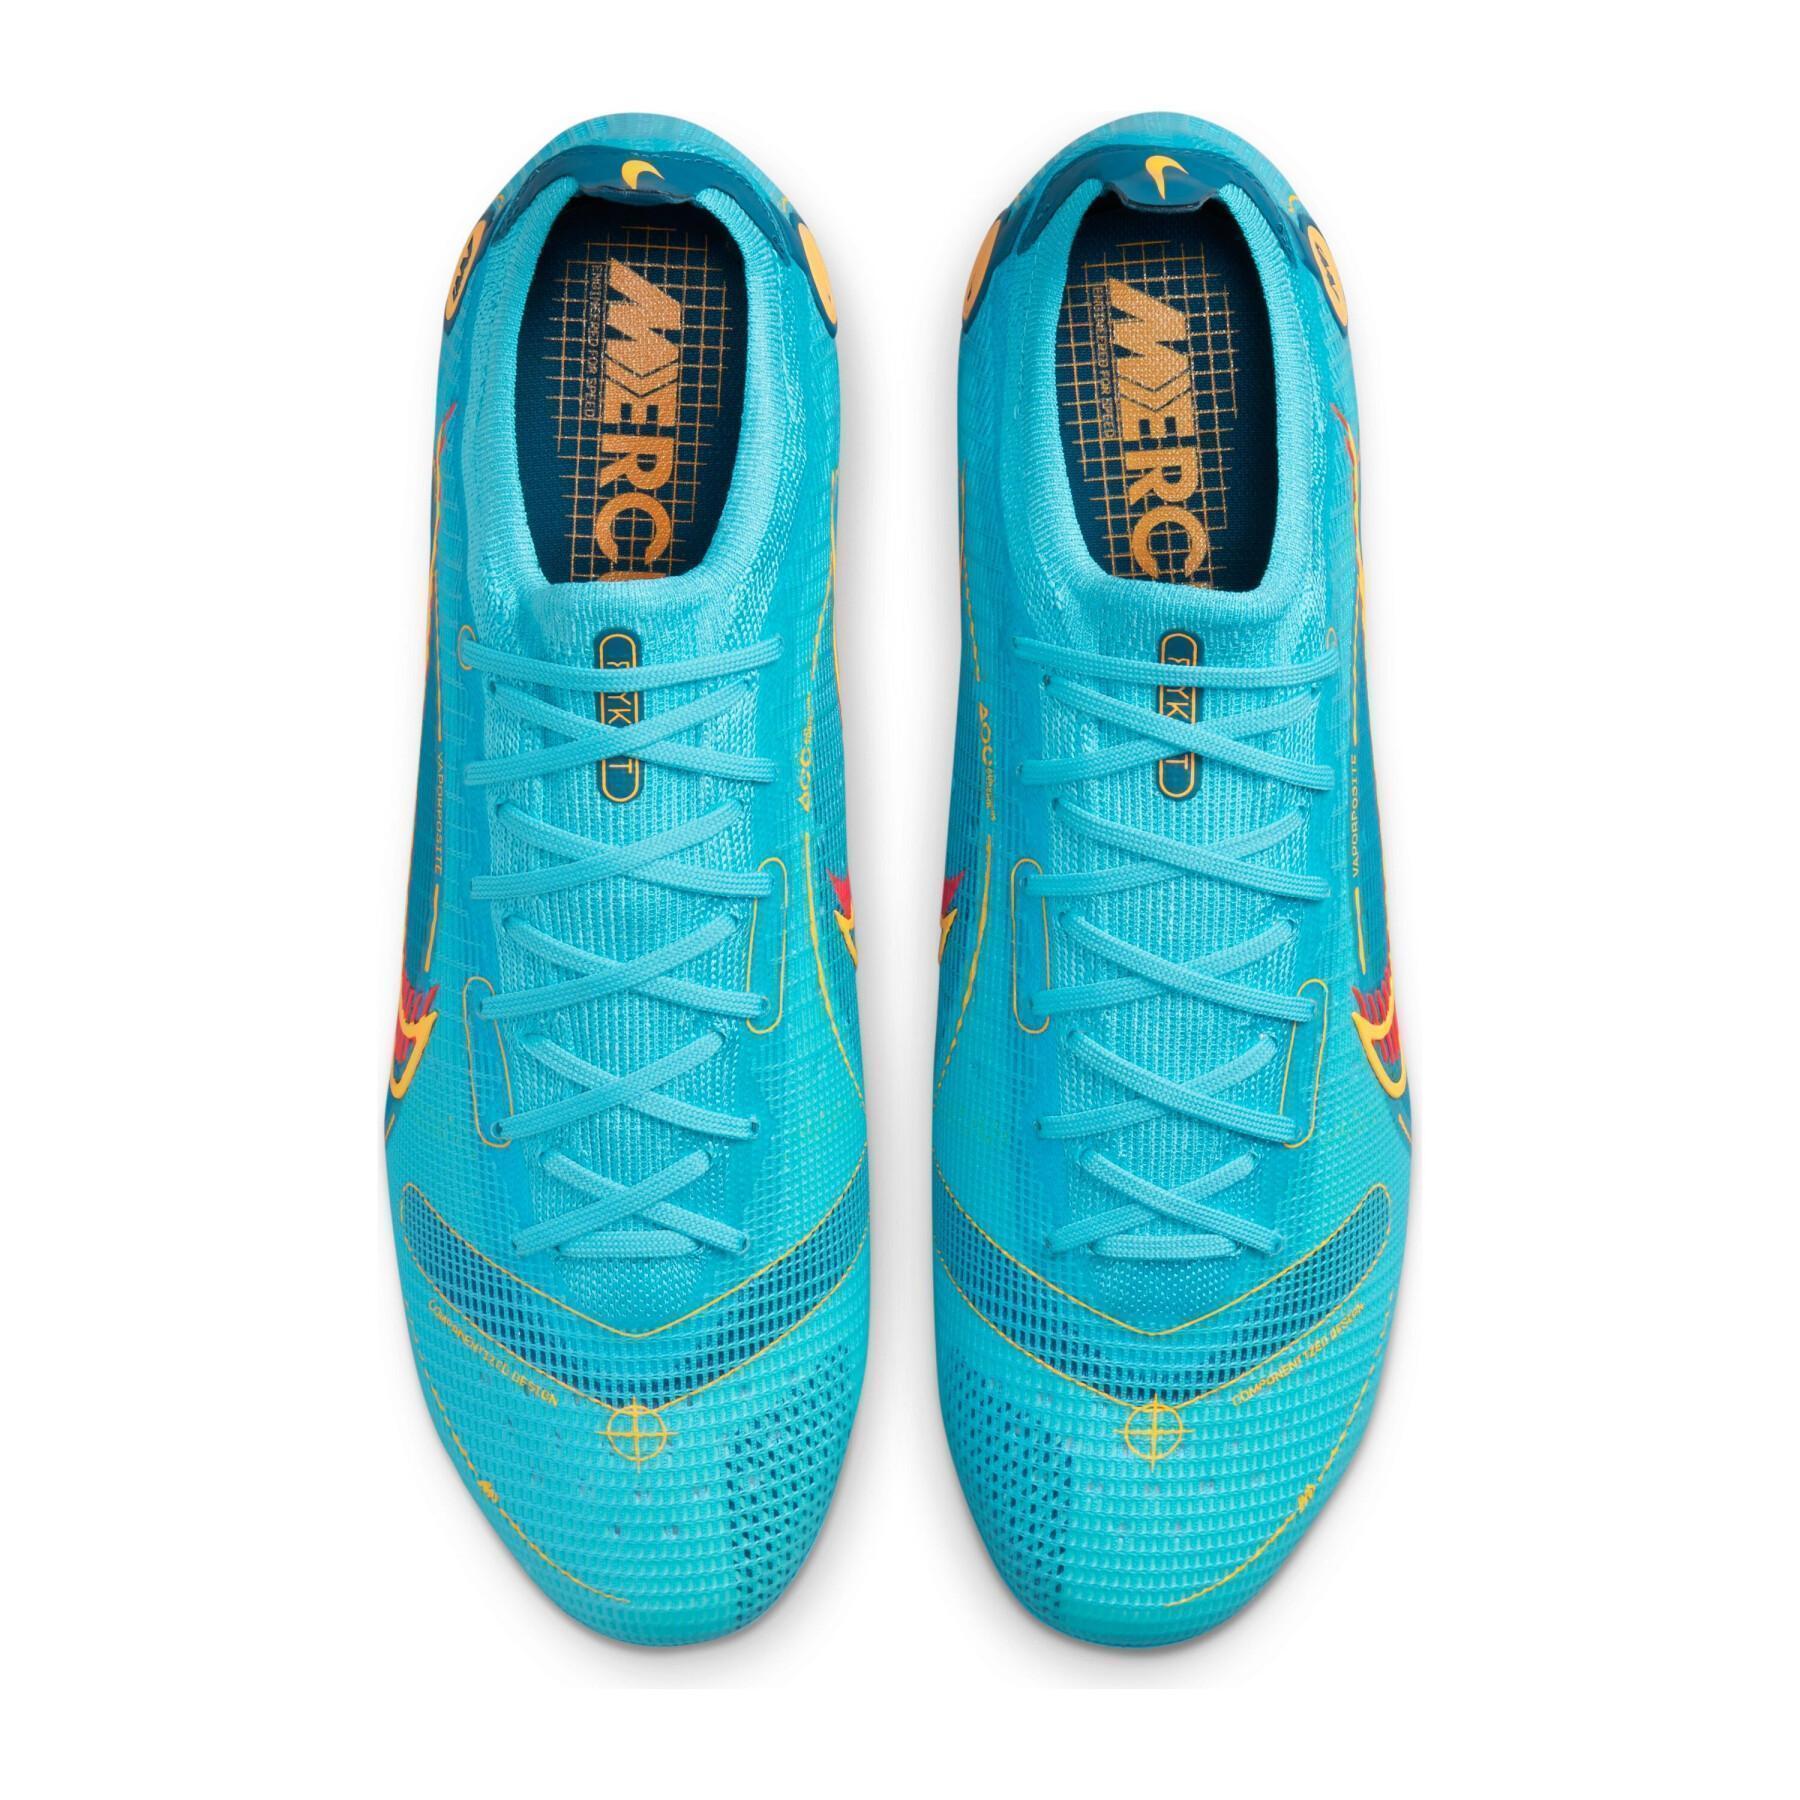 Scarpe da calcio Nike Mercurial Vapor 14 Élite SG-PRO -Blueprint Pack